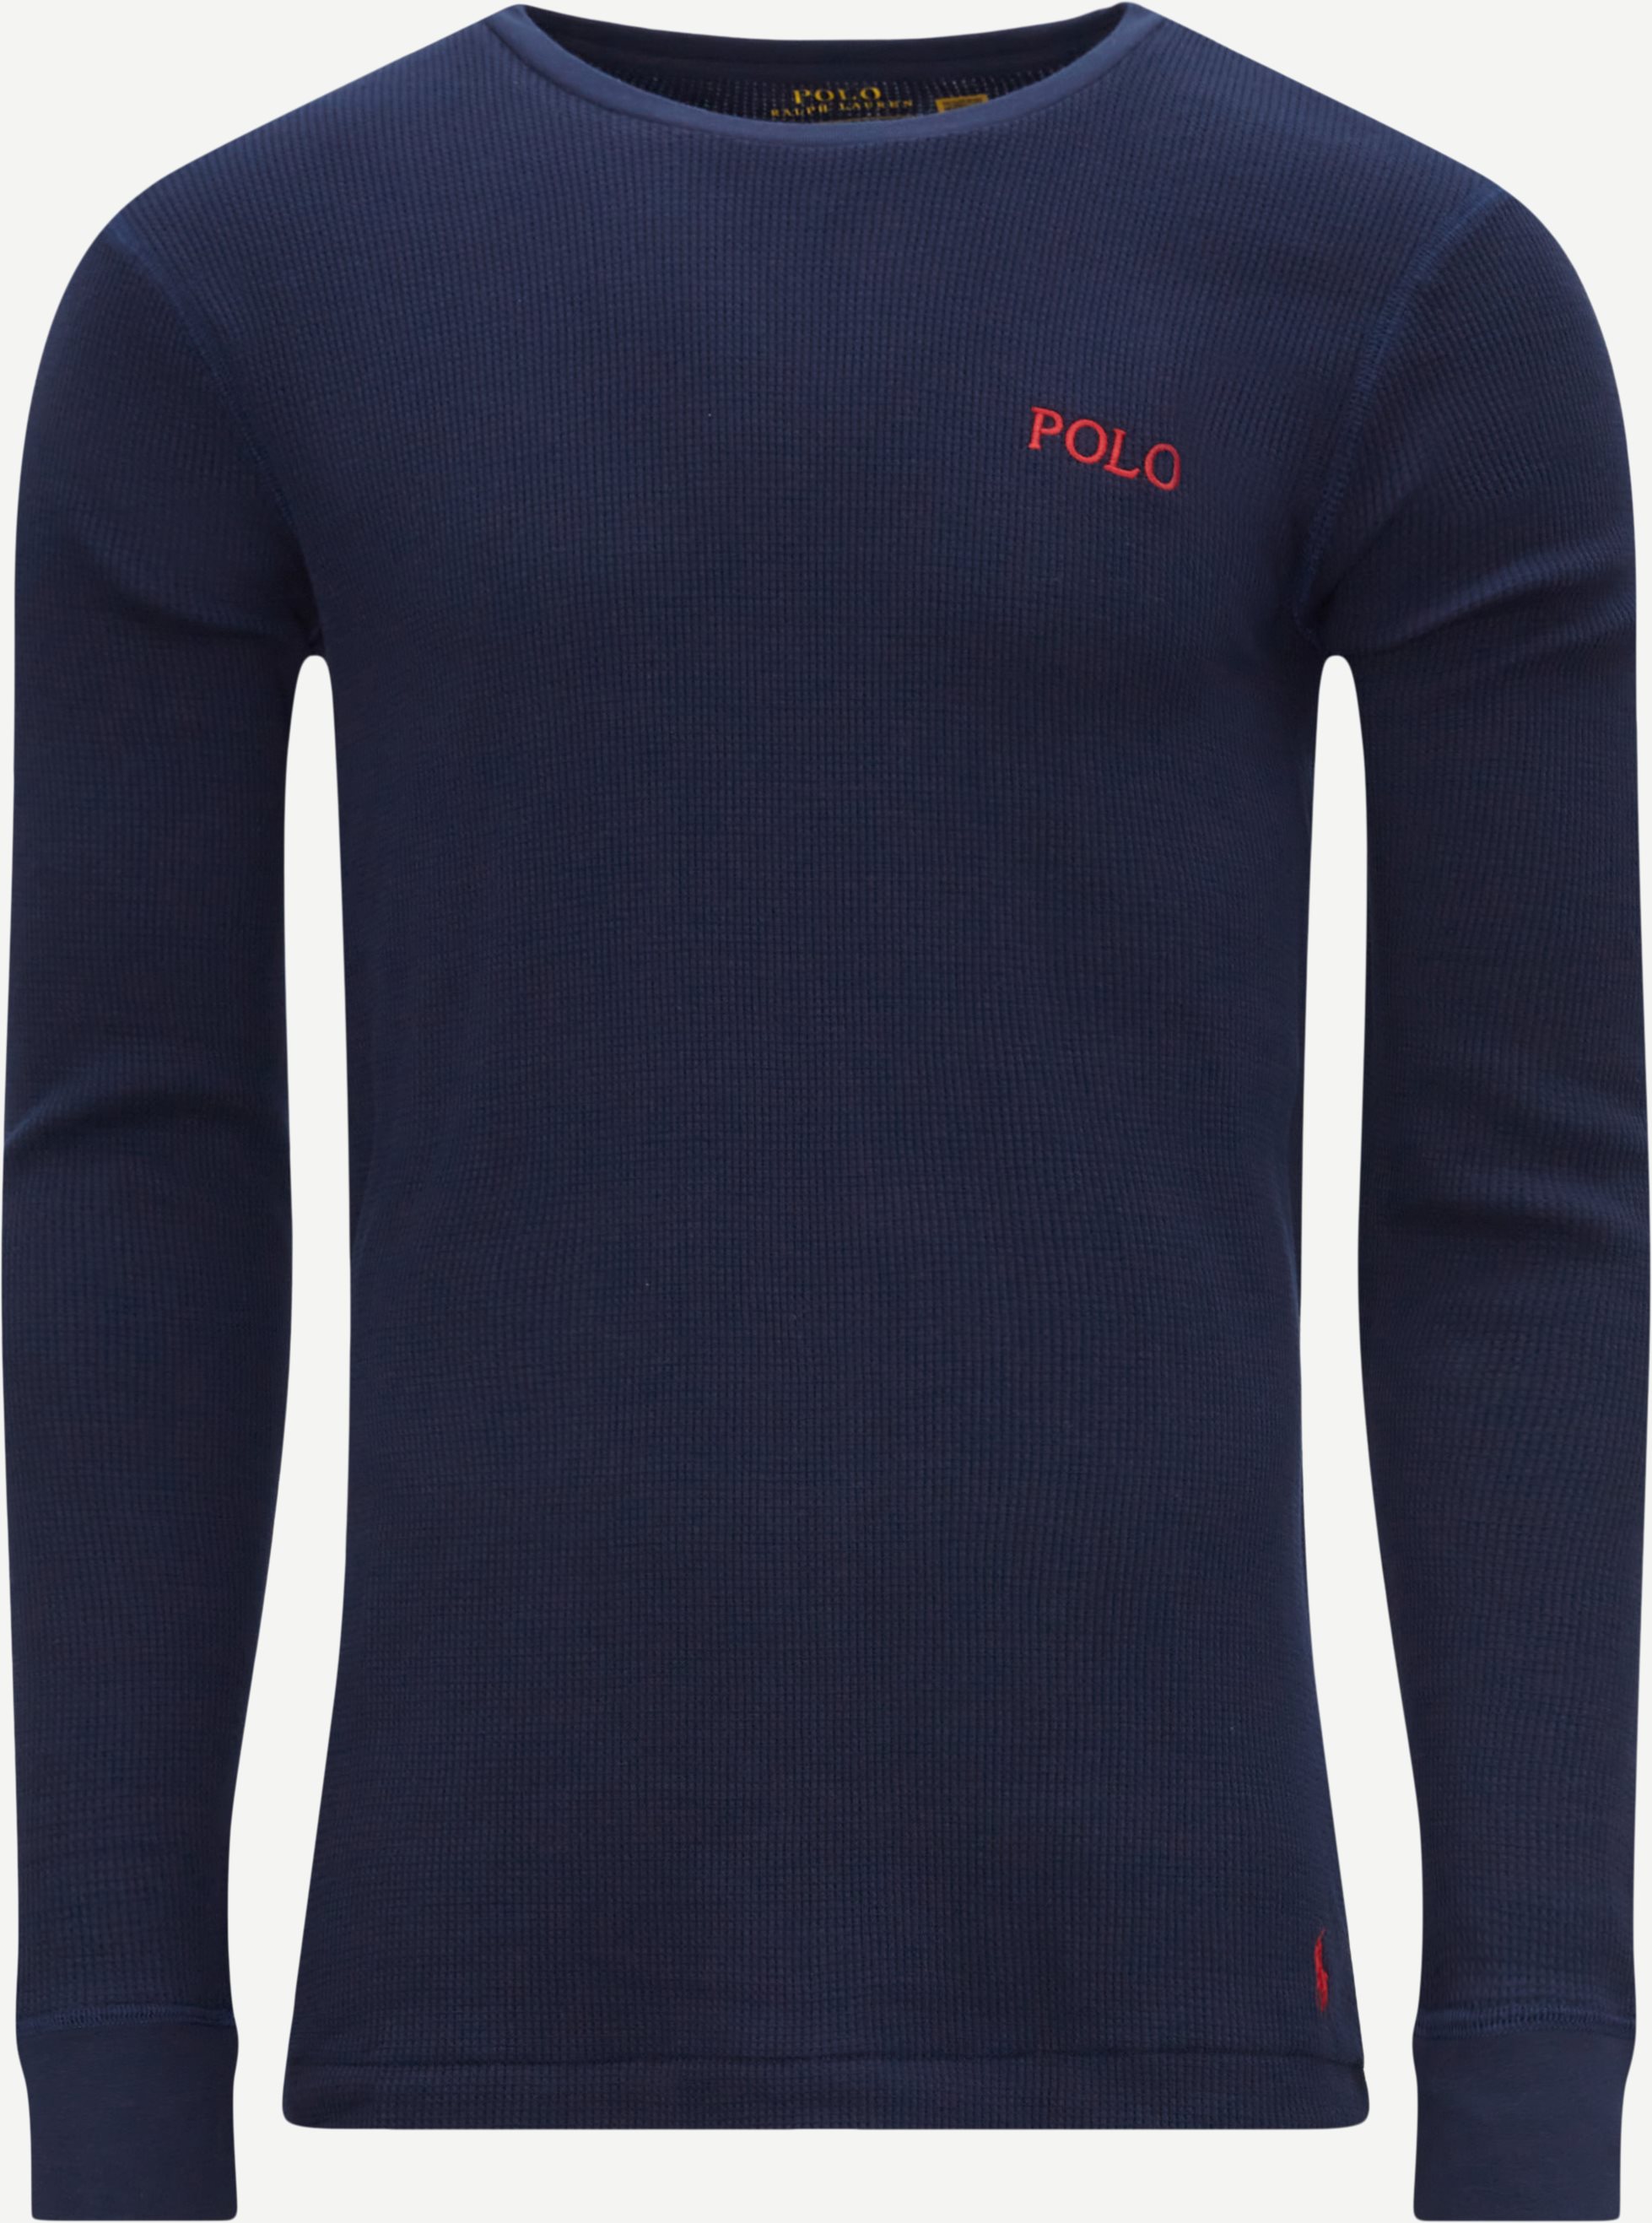 Polo Ralph Lauren T-shirts 714830284 FW22 Blue